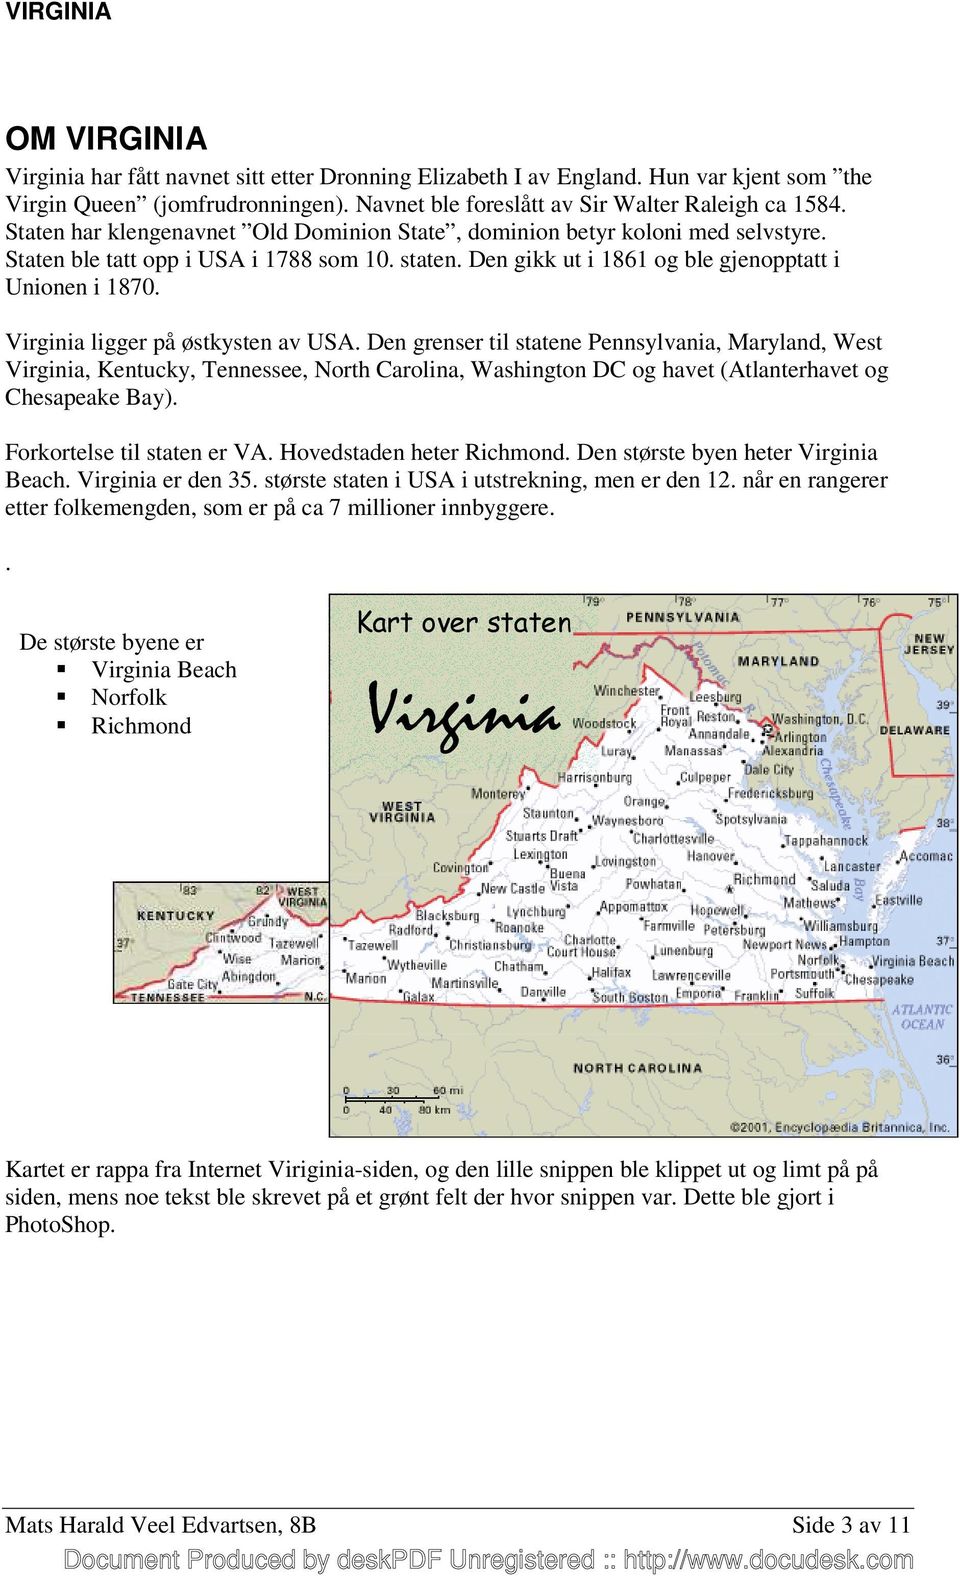 Virginia ligger på østkysten av USA. Den grenser til statene Pennsylvania, Maryland, West Virginia, Kentucky, Tennessee, North Carolina, Washington DC og havet (Atlanterhavet og Chesapeake Bay).